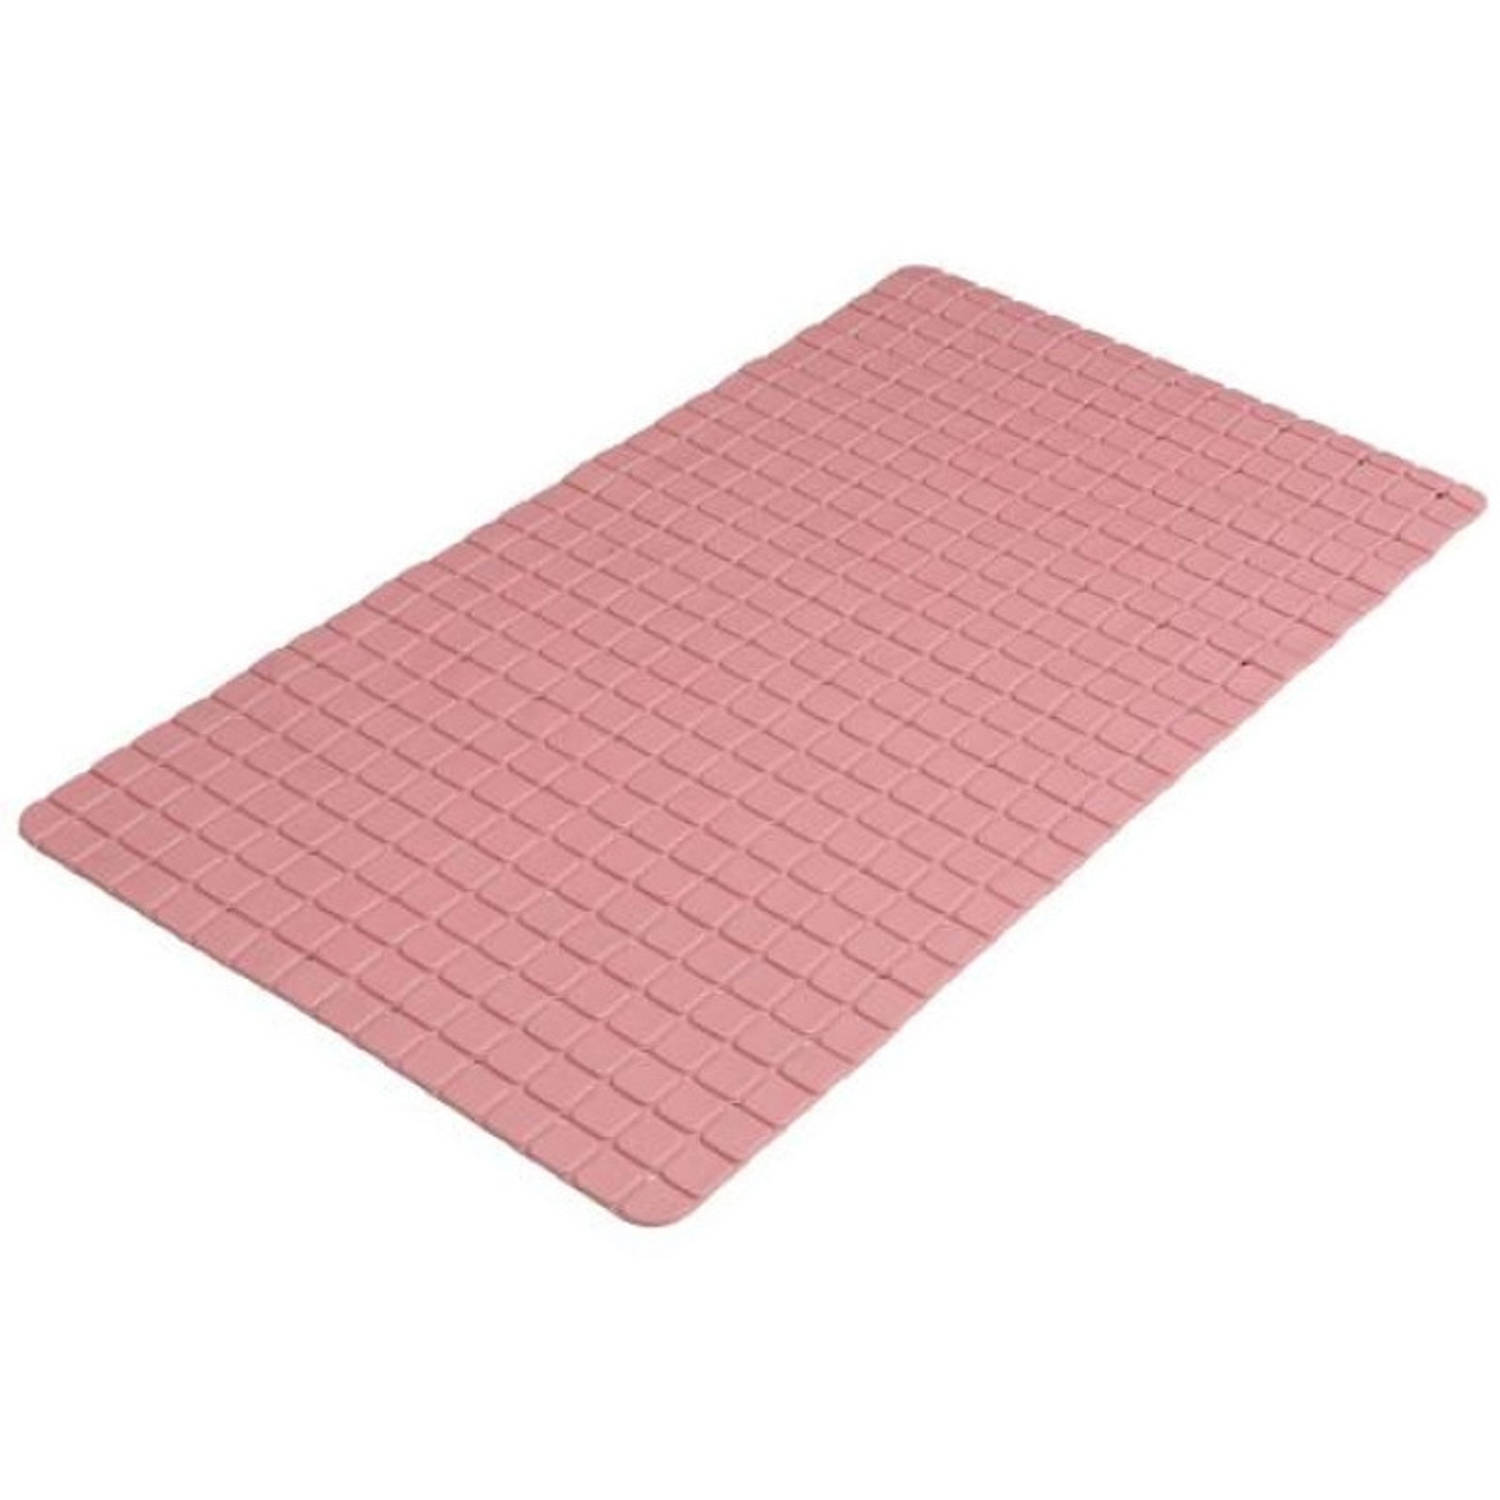 Urban Living Badkamer-douche anti slip mat rubber voor op de vloer oud roze 39 x 69 cm Badmatjes